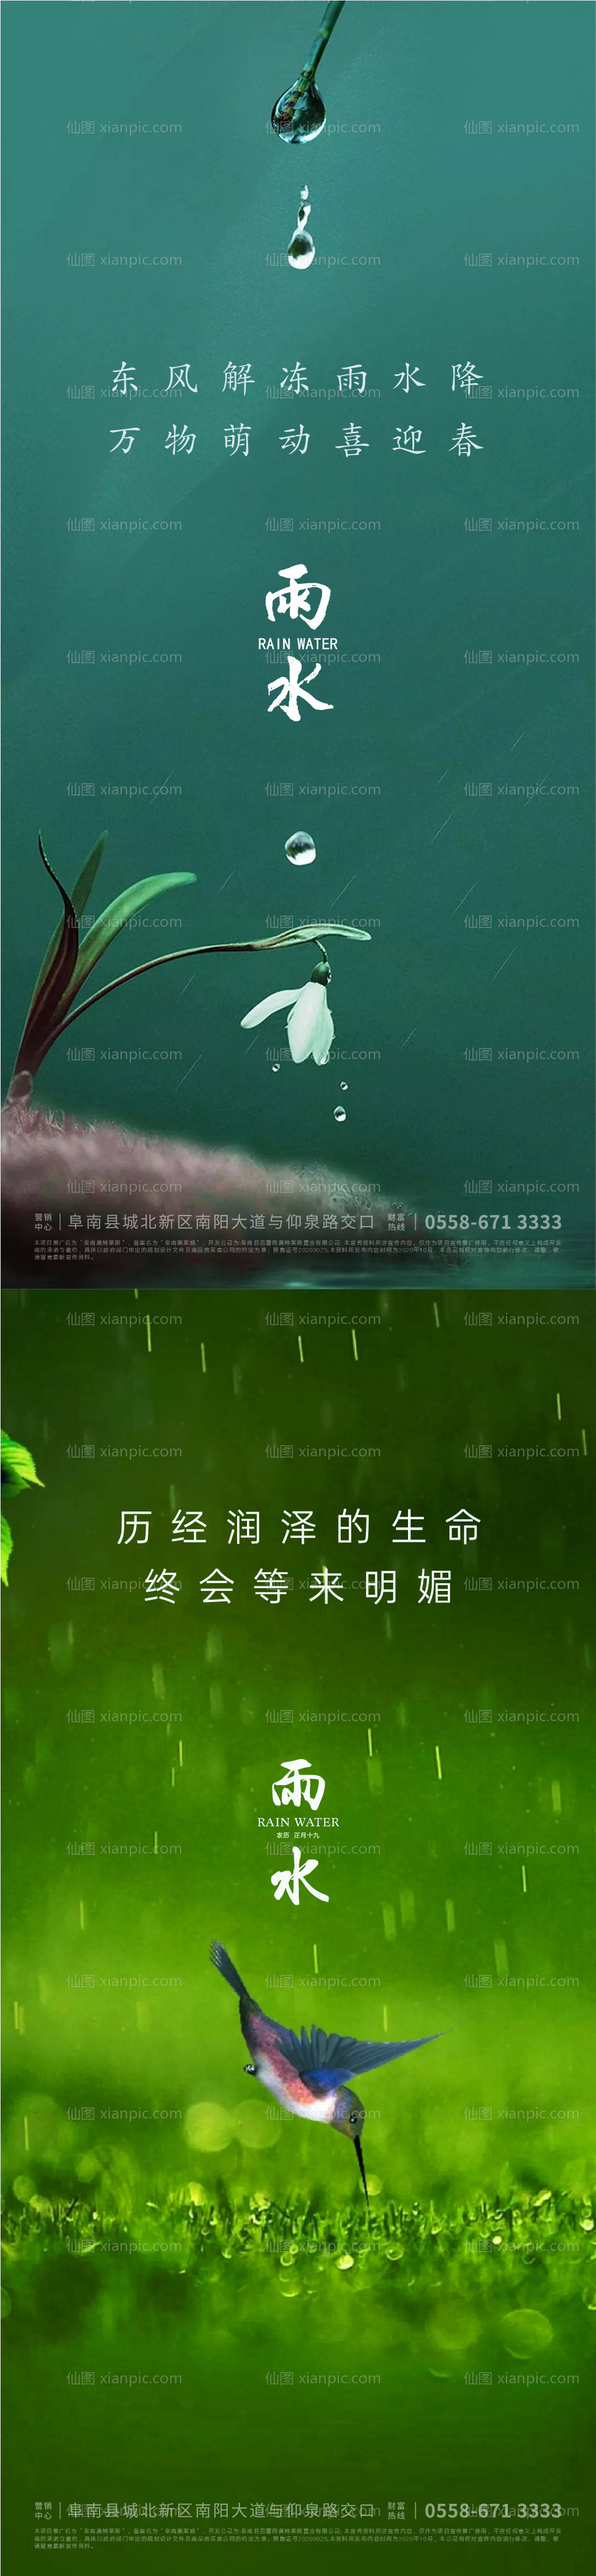 素材乐-雨水海报